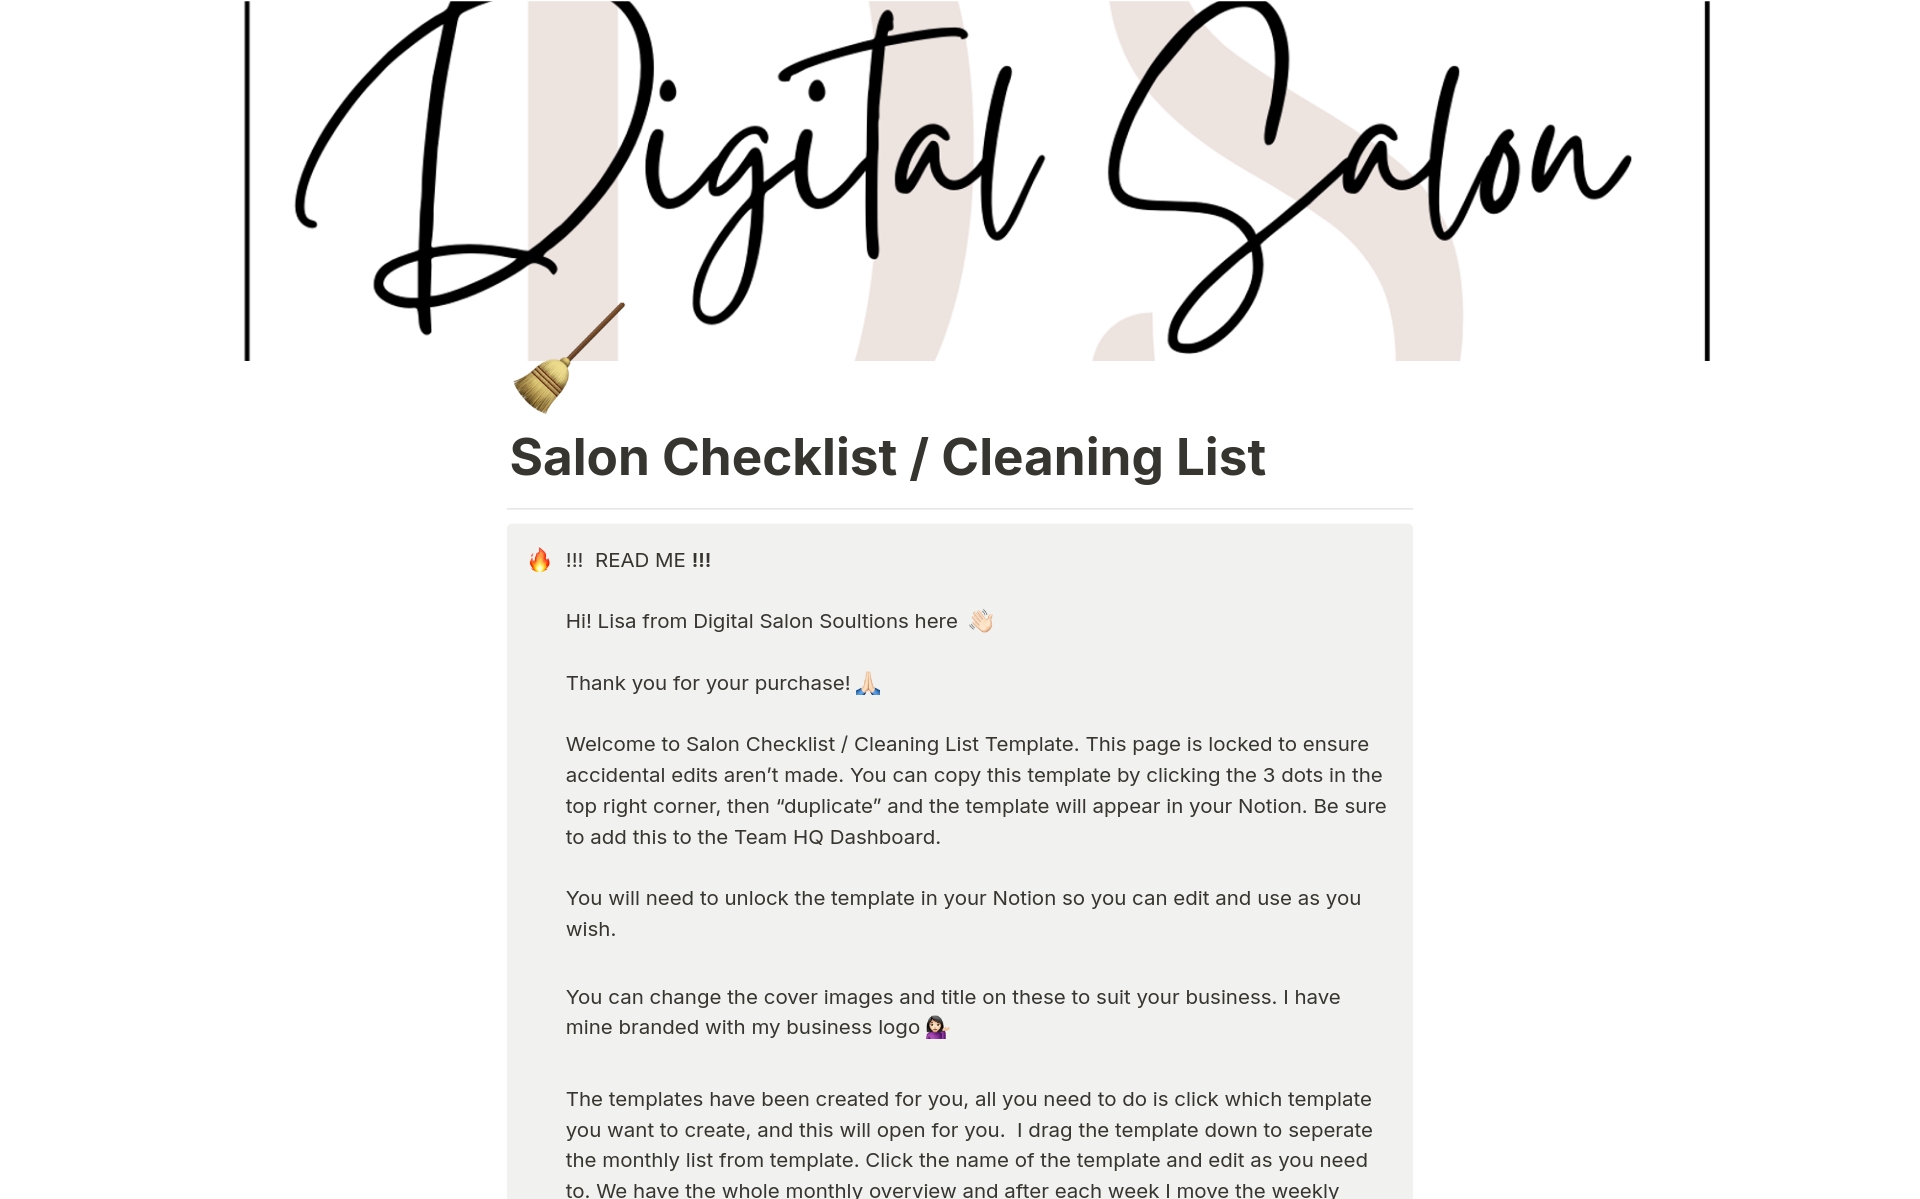 Vista previa de una plantilla para Salon Checklist / Cleaning List